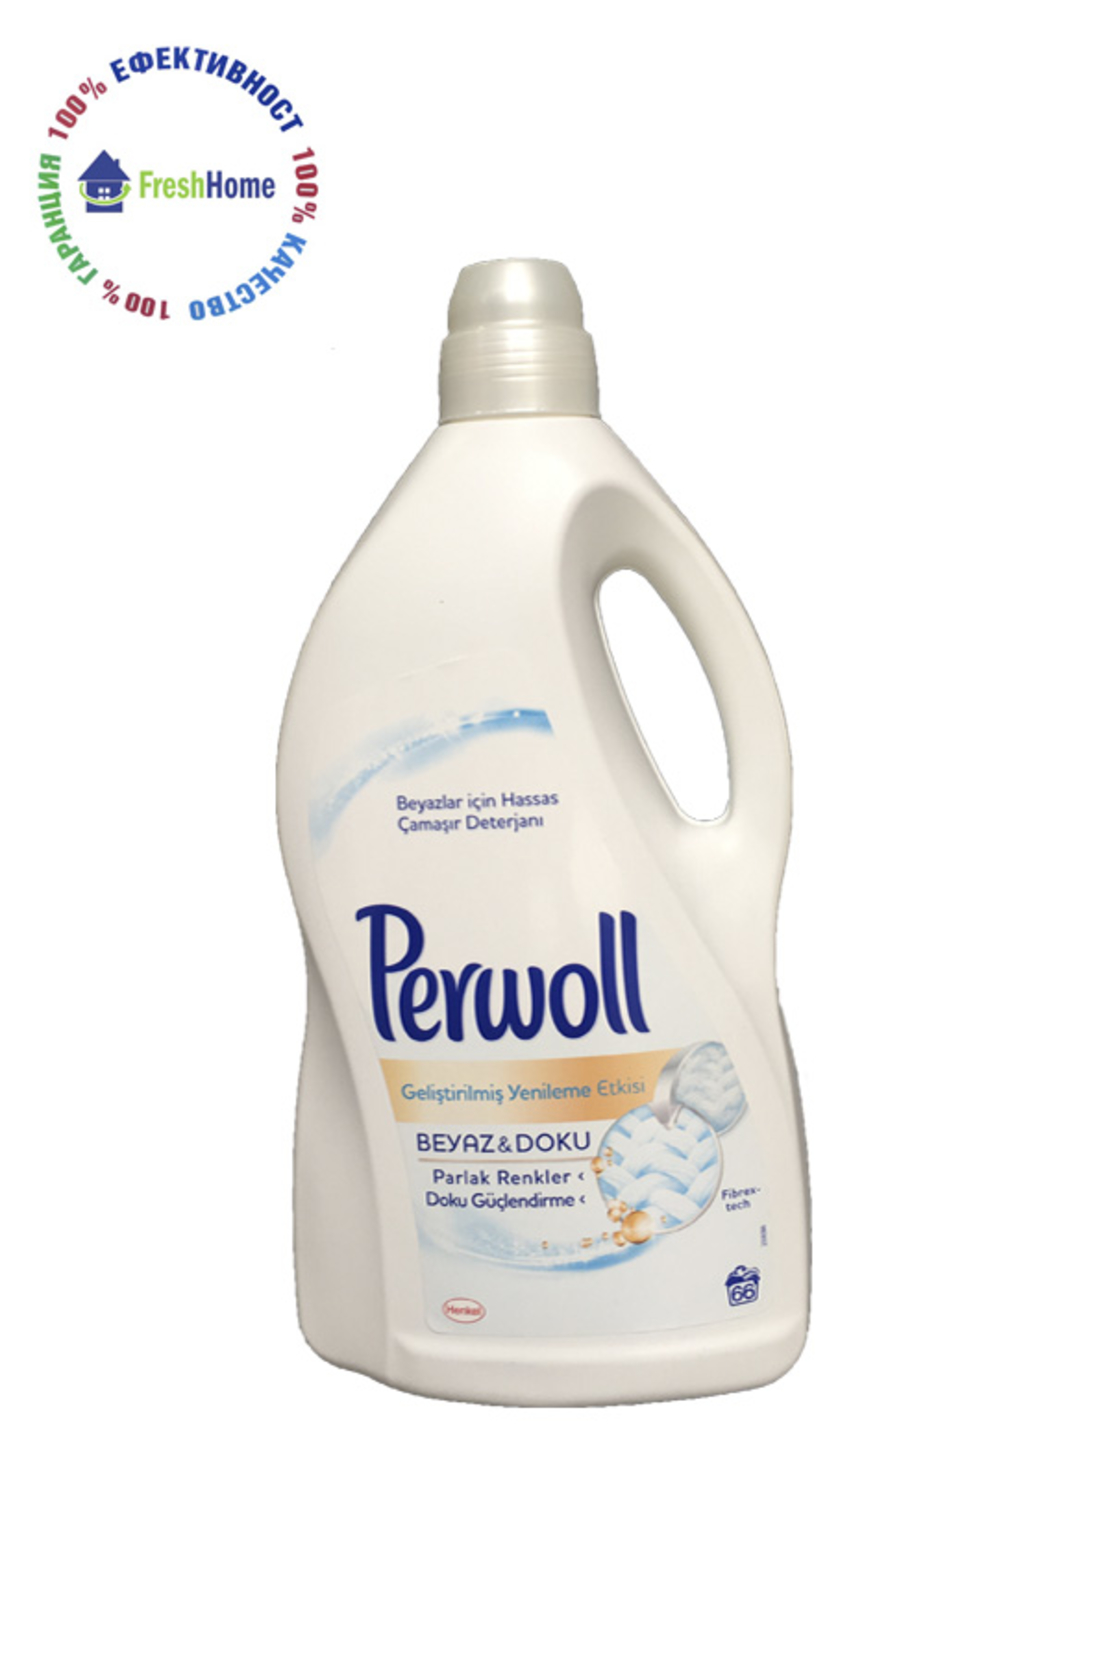 Perwoll течен перилен препарат за бяло пране 72 пранета/ 3.96 л.